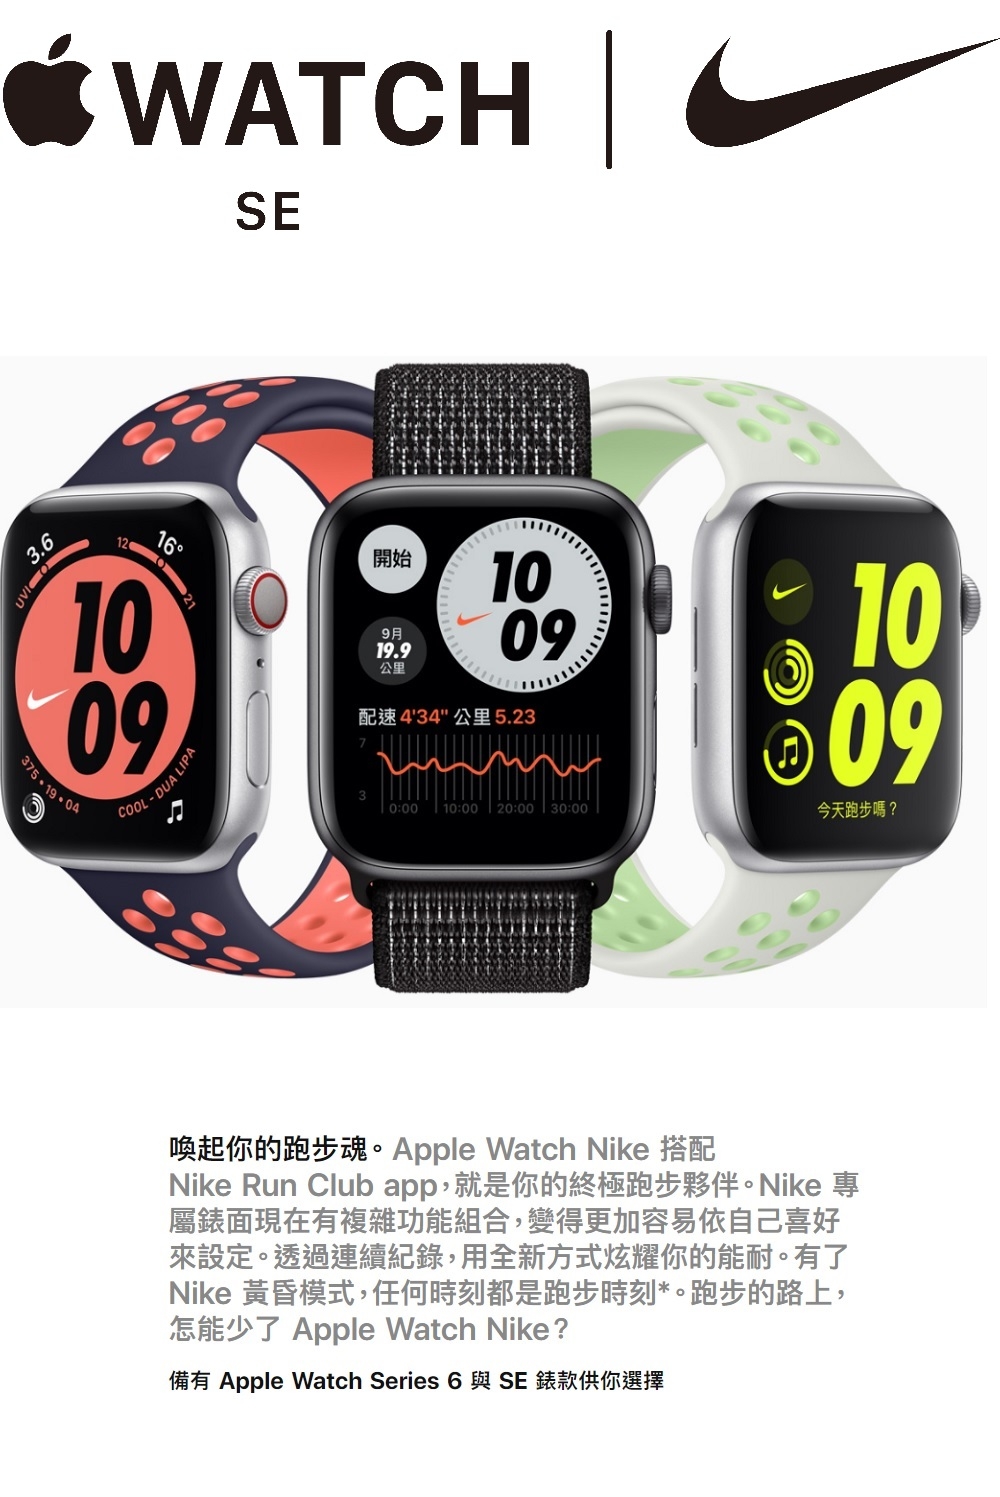 新版) Apple Watch Nike+SE 44mm 蘋果手錶鋁金屬錶殼配Nike運動錶帶